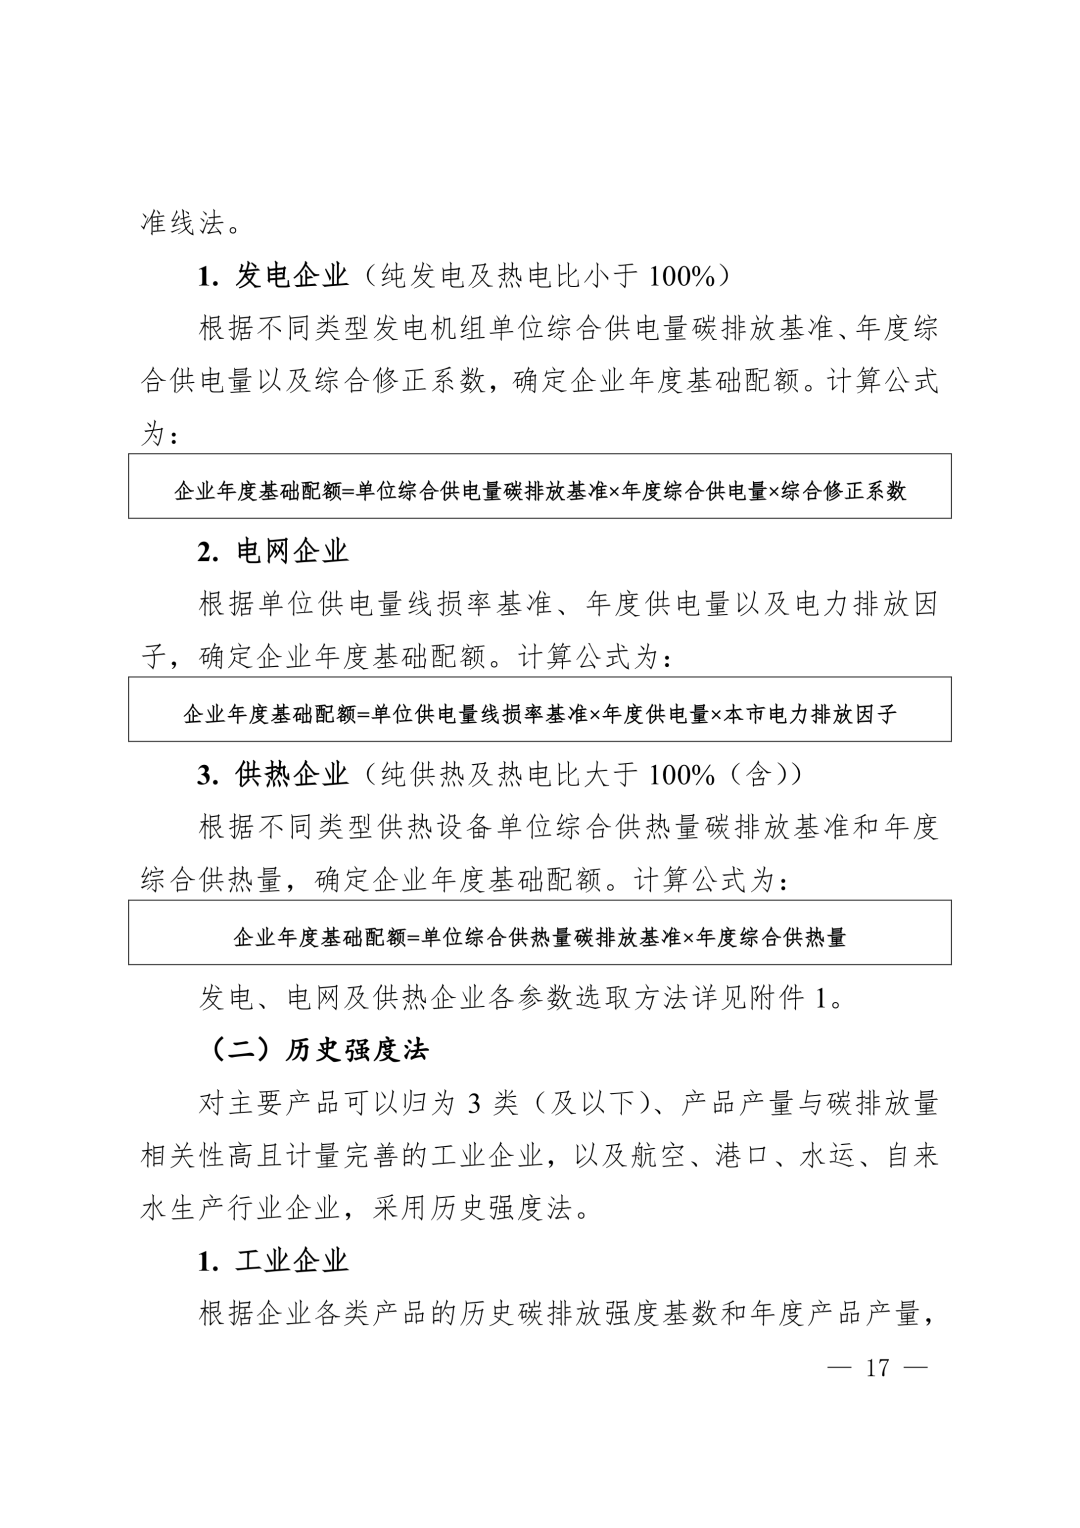 【关注】上海市生态环境局关于印发《上海市纳入碳排放配额管理单位名单（2019版）》及《上海市2019年碳排放配额分配方案》的通知(图17)